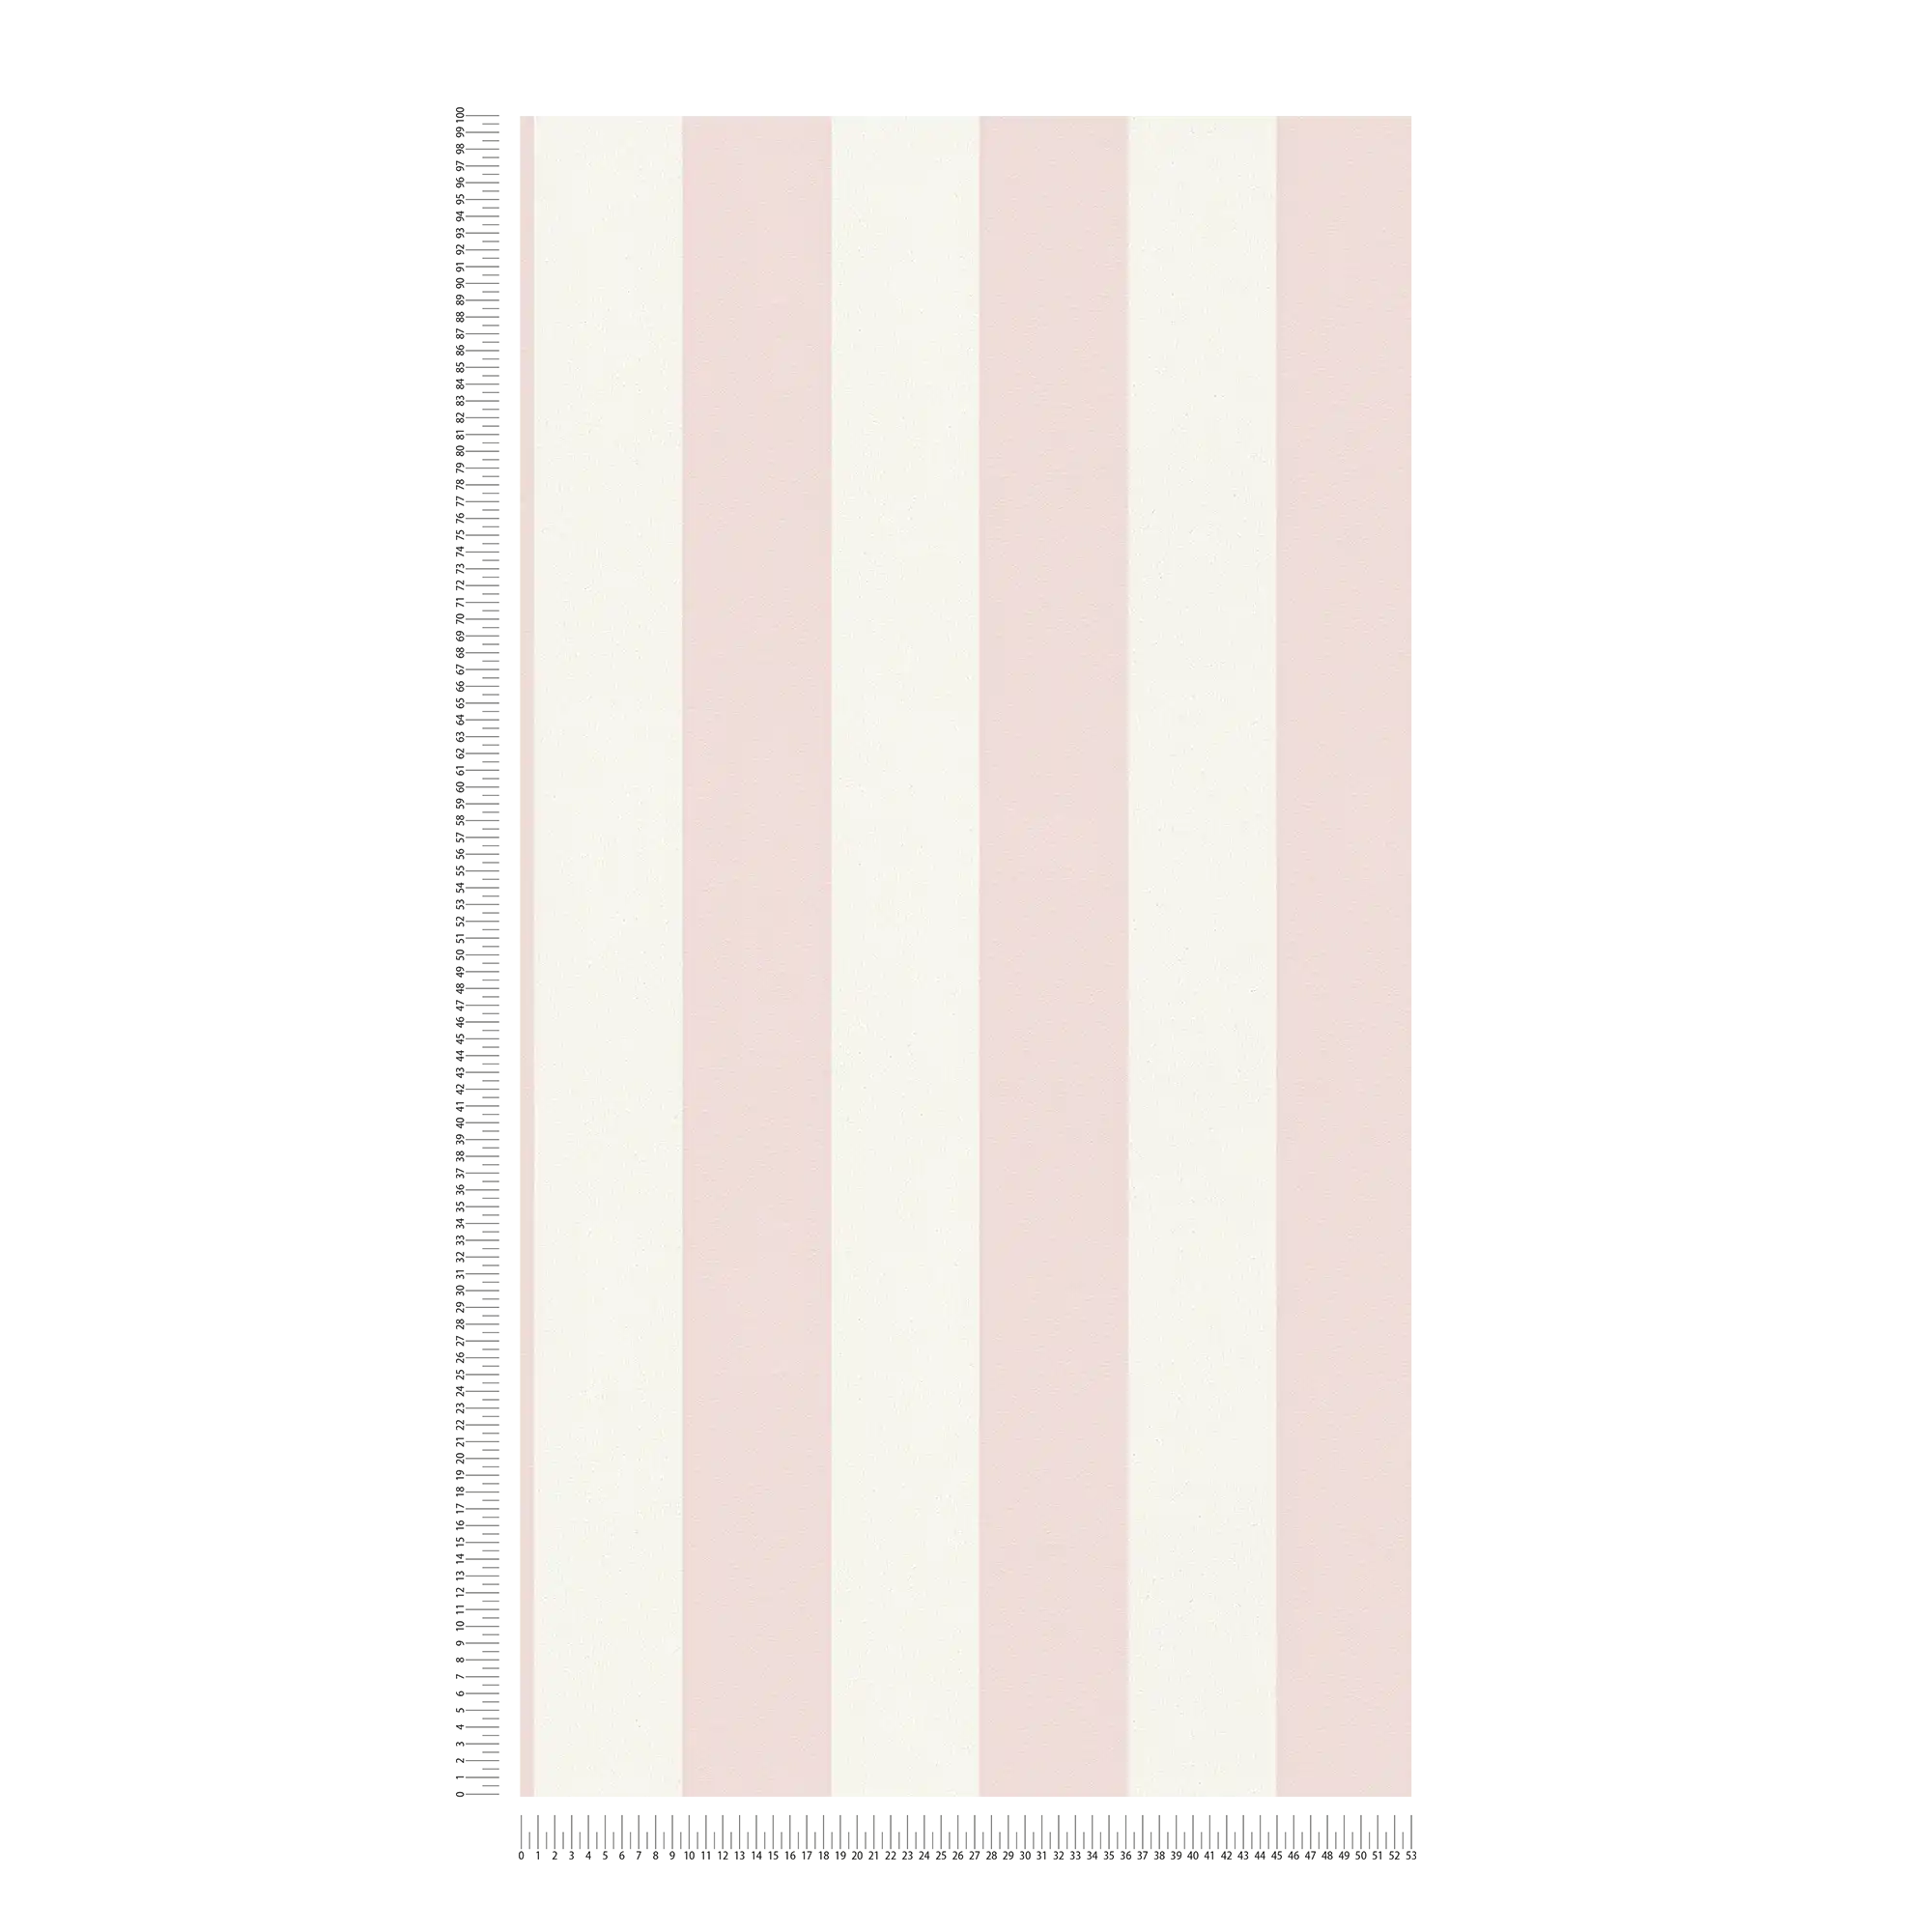             Strepen behang met structuurpatroon, blokstrepen roze & wit
        